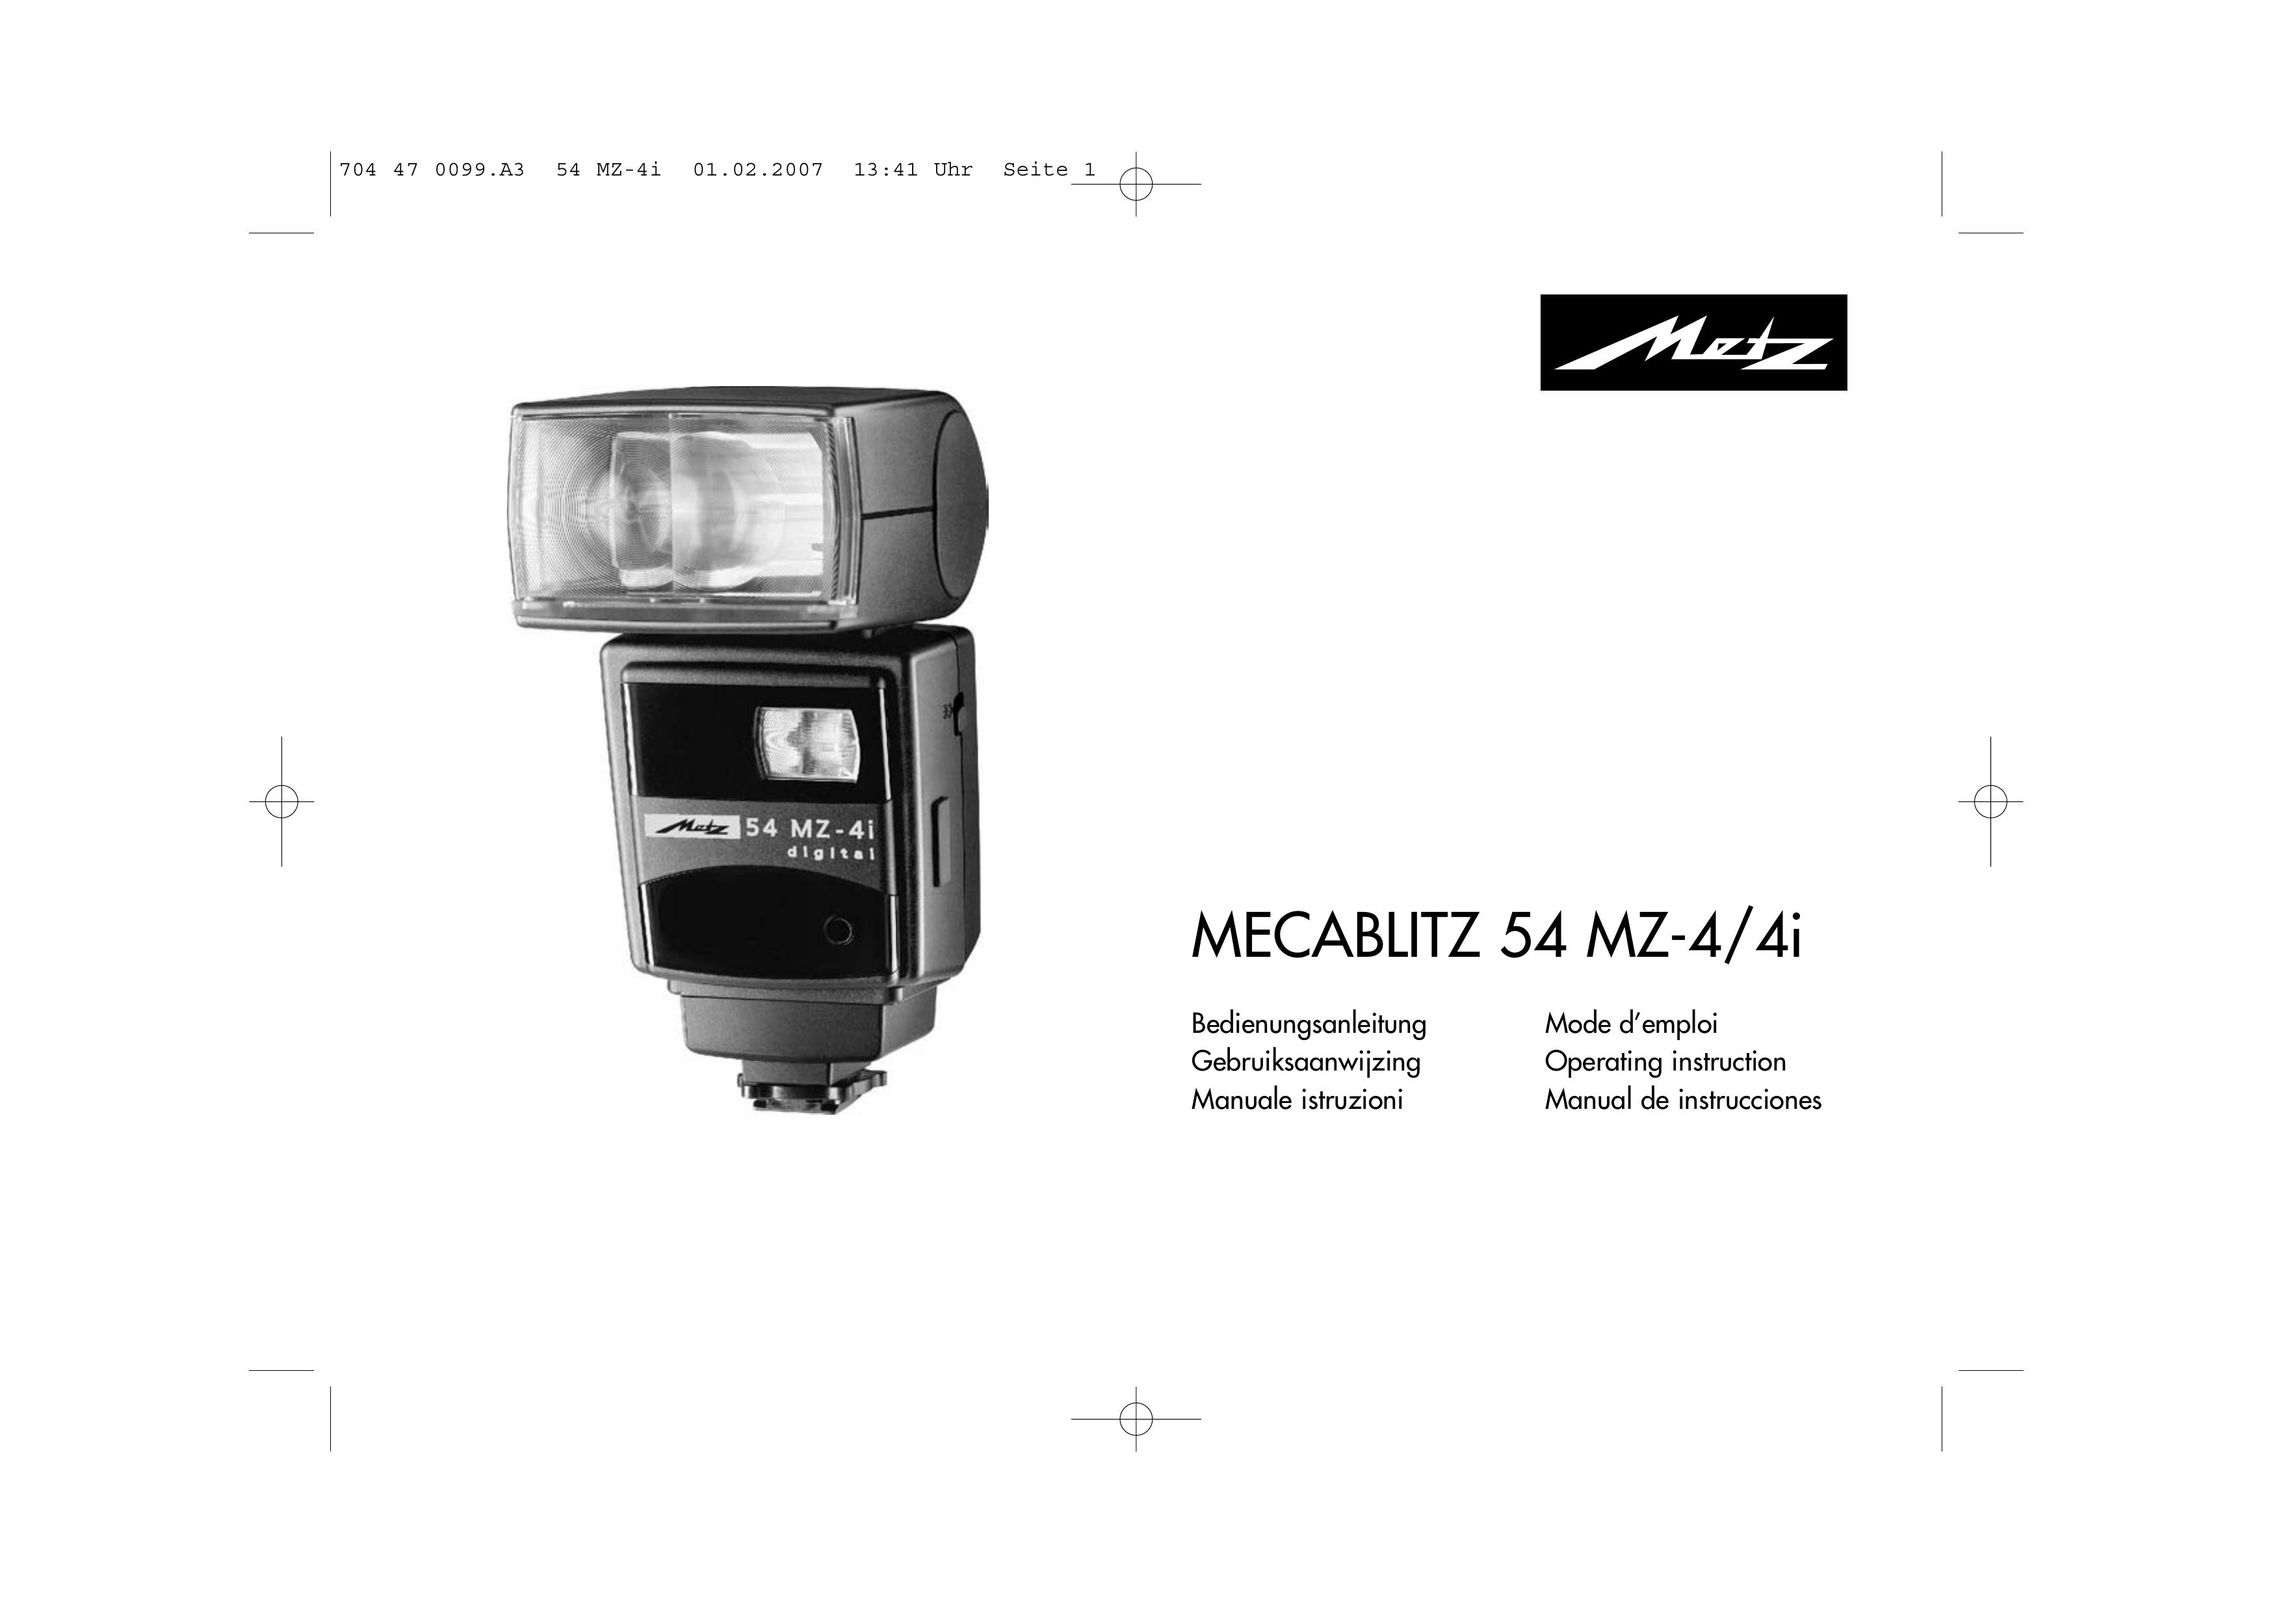 Metz MECABLITZ 54 MZ-4/4I Cable Box User Manual